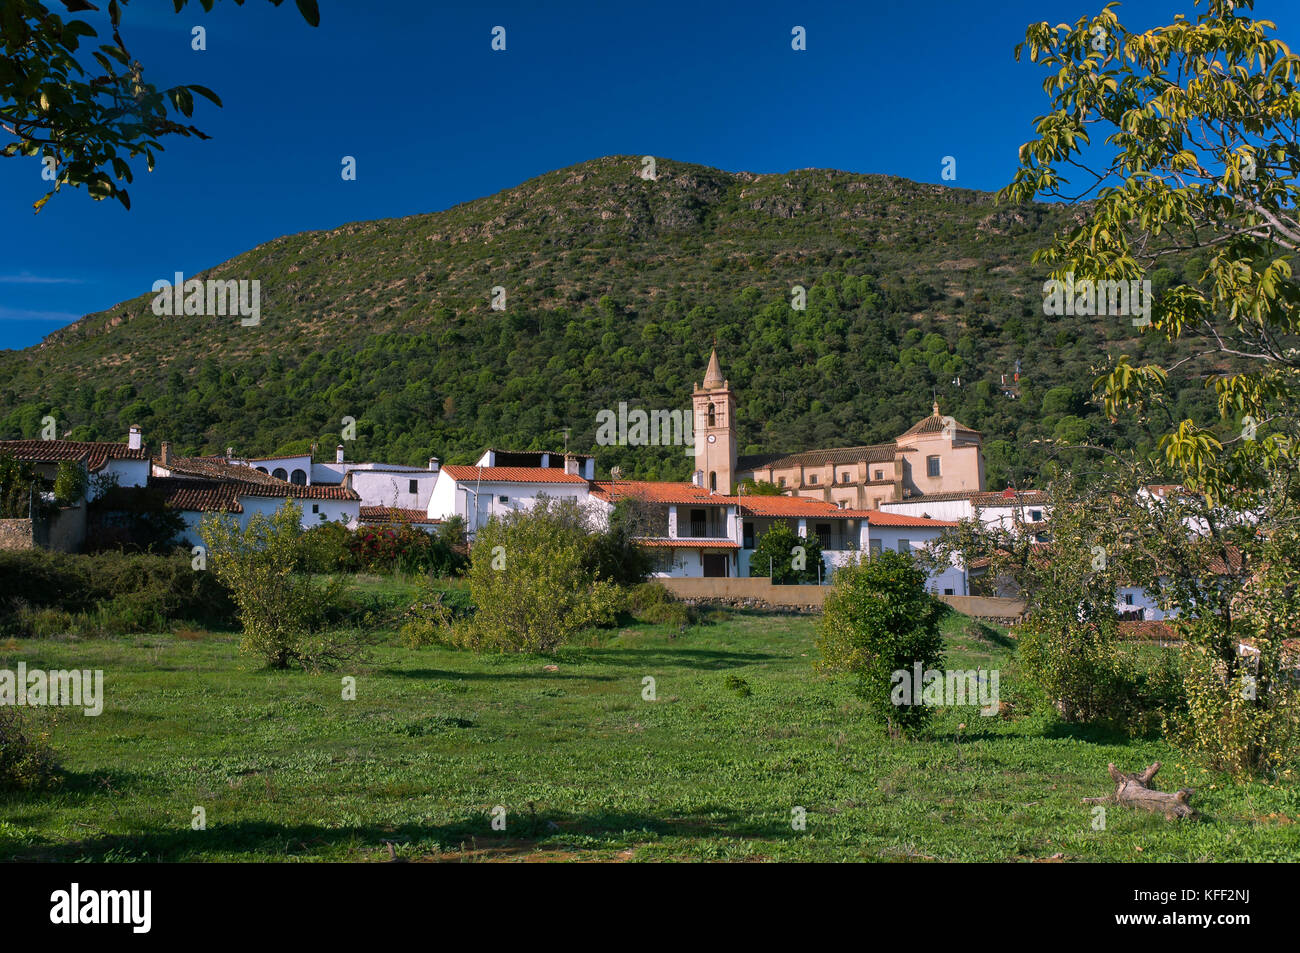 Vue panoramique, linares de la sierra, province de Huelva, Andalousie, Espagne, Europe Banque D'Images